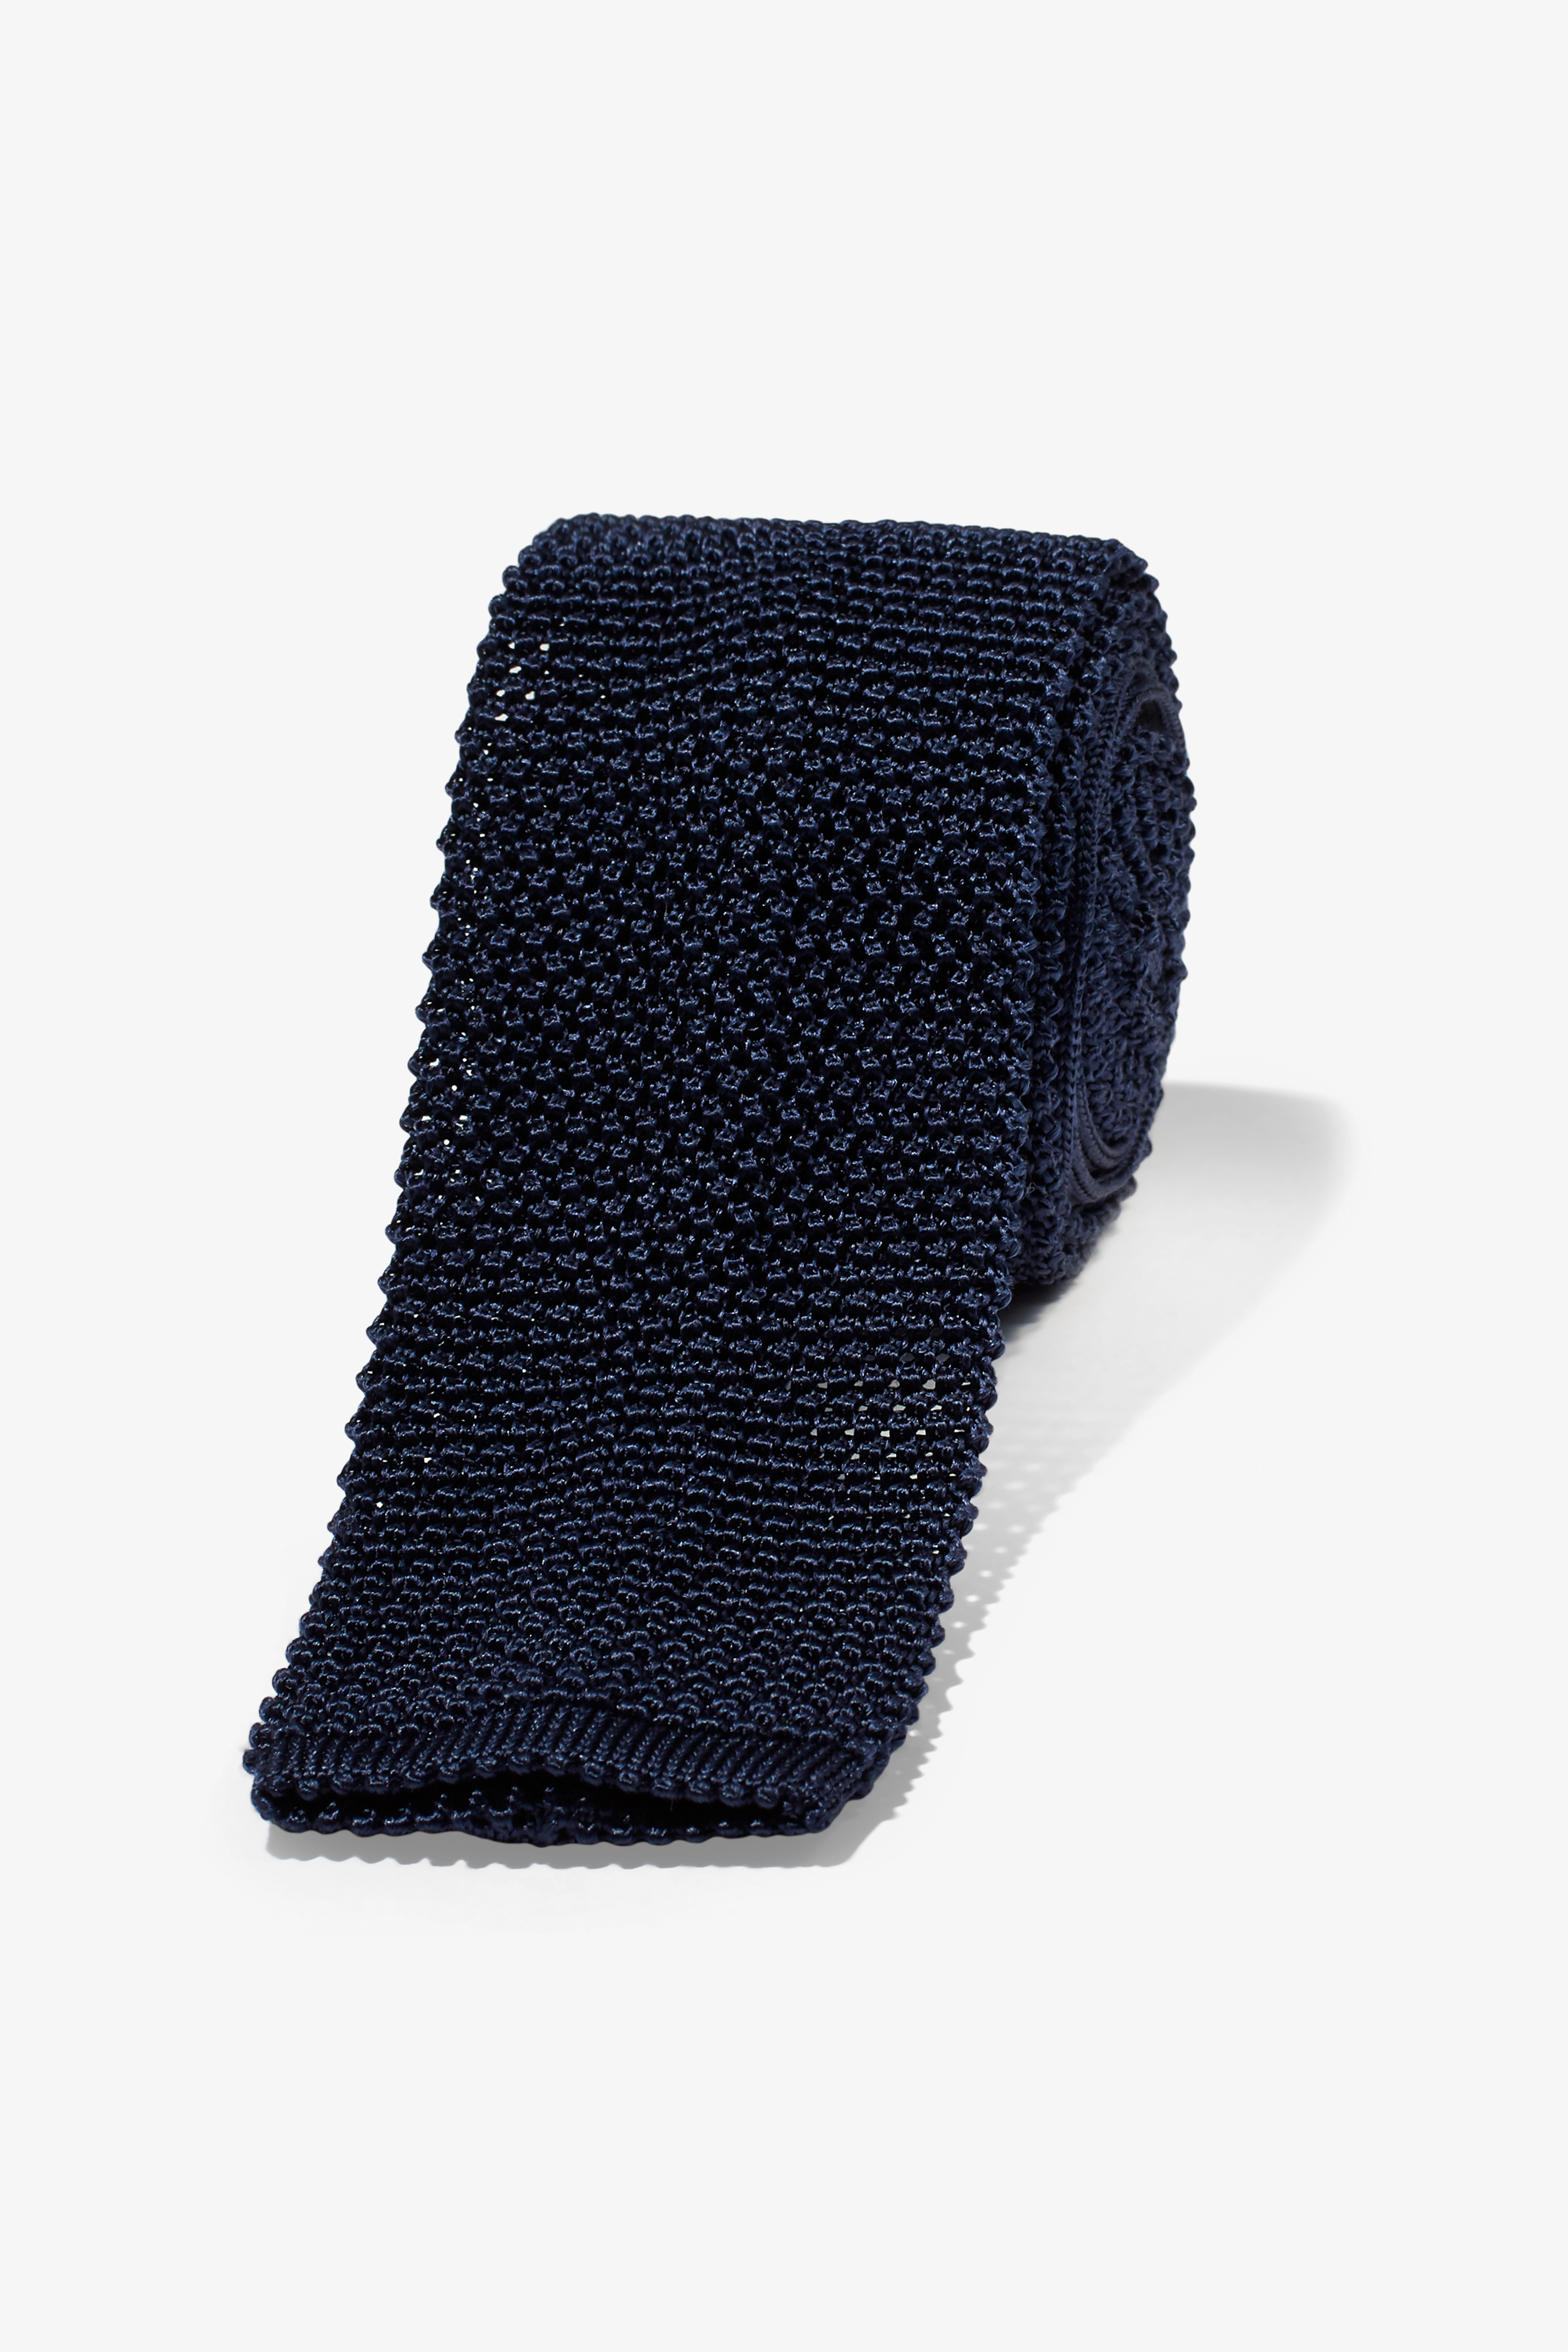 Bonobos Men's Premium Necktie